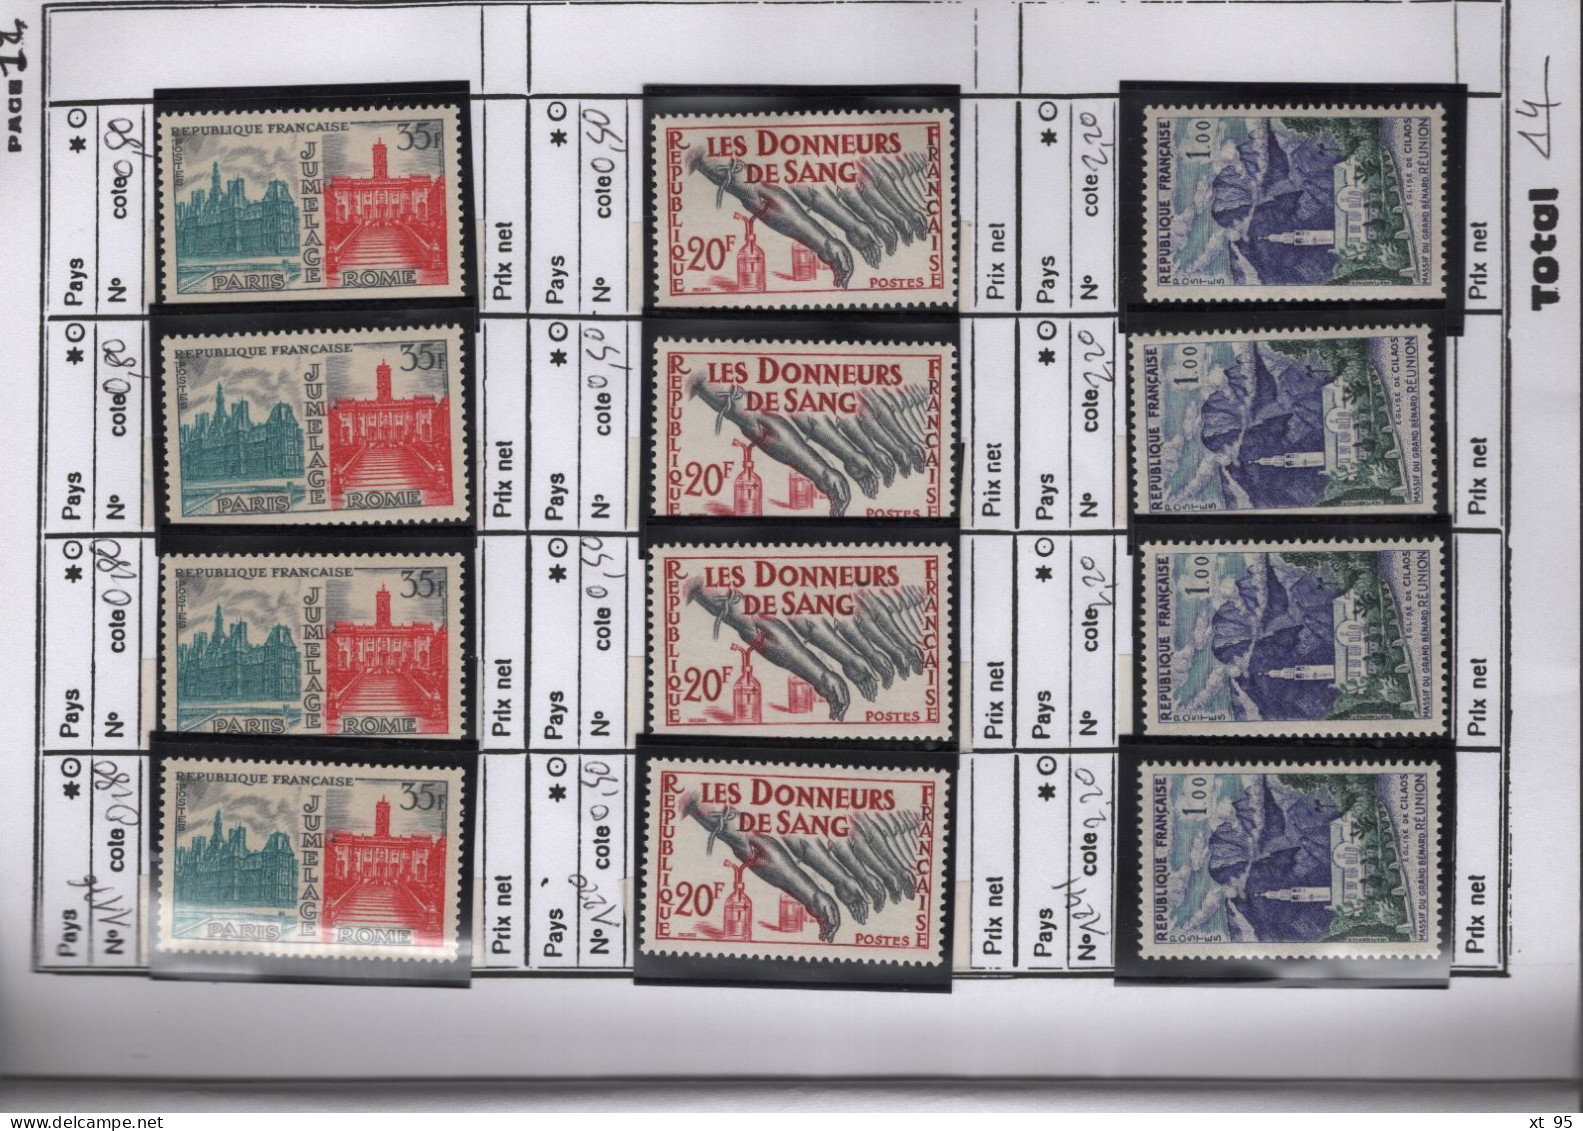 Carnet de circulation 16 pages avec timbres neufs ** sans charniere - cote +230€